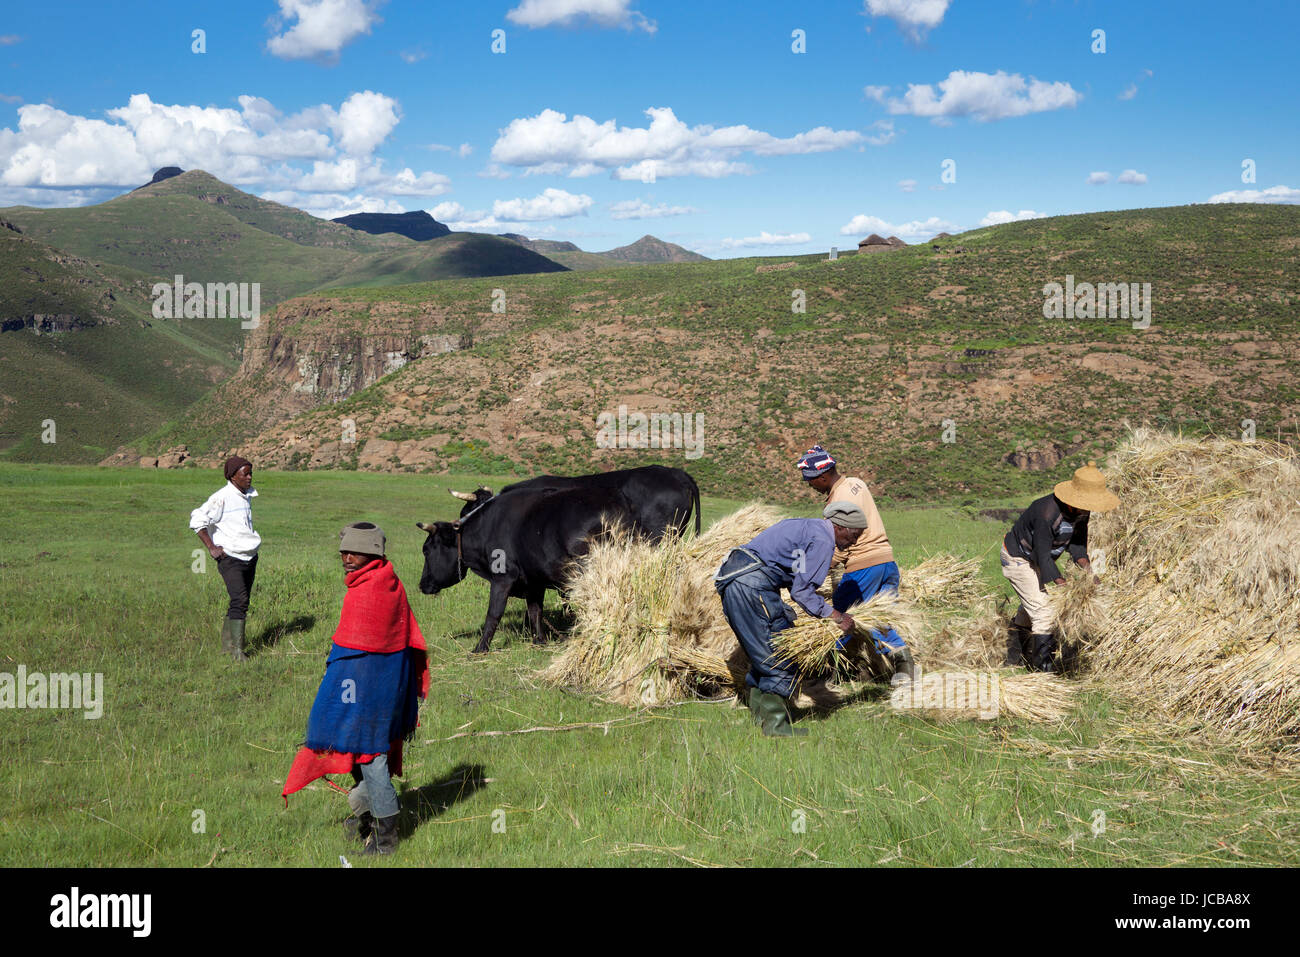 Bauern Stapeln Weizen Ernte zentrale Hochland Lesotho Südliches Afrika Stockfoto